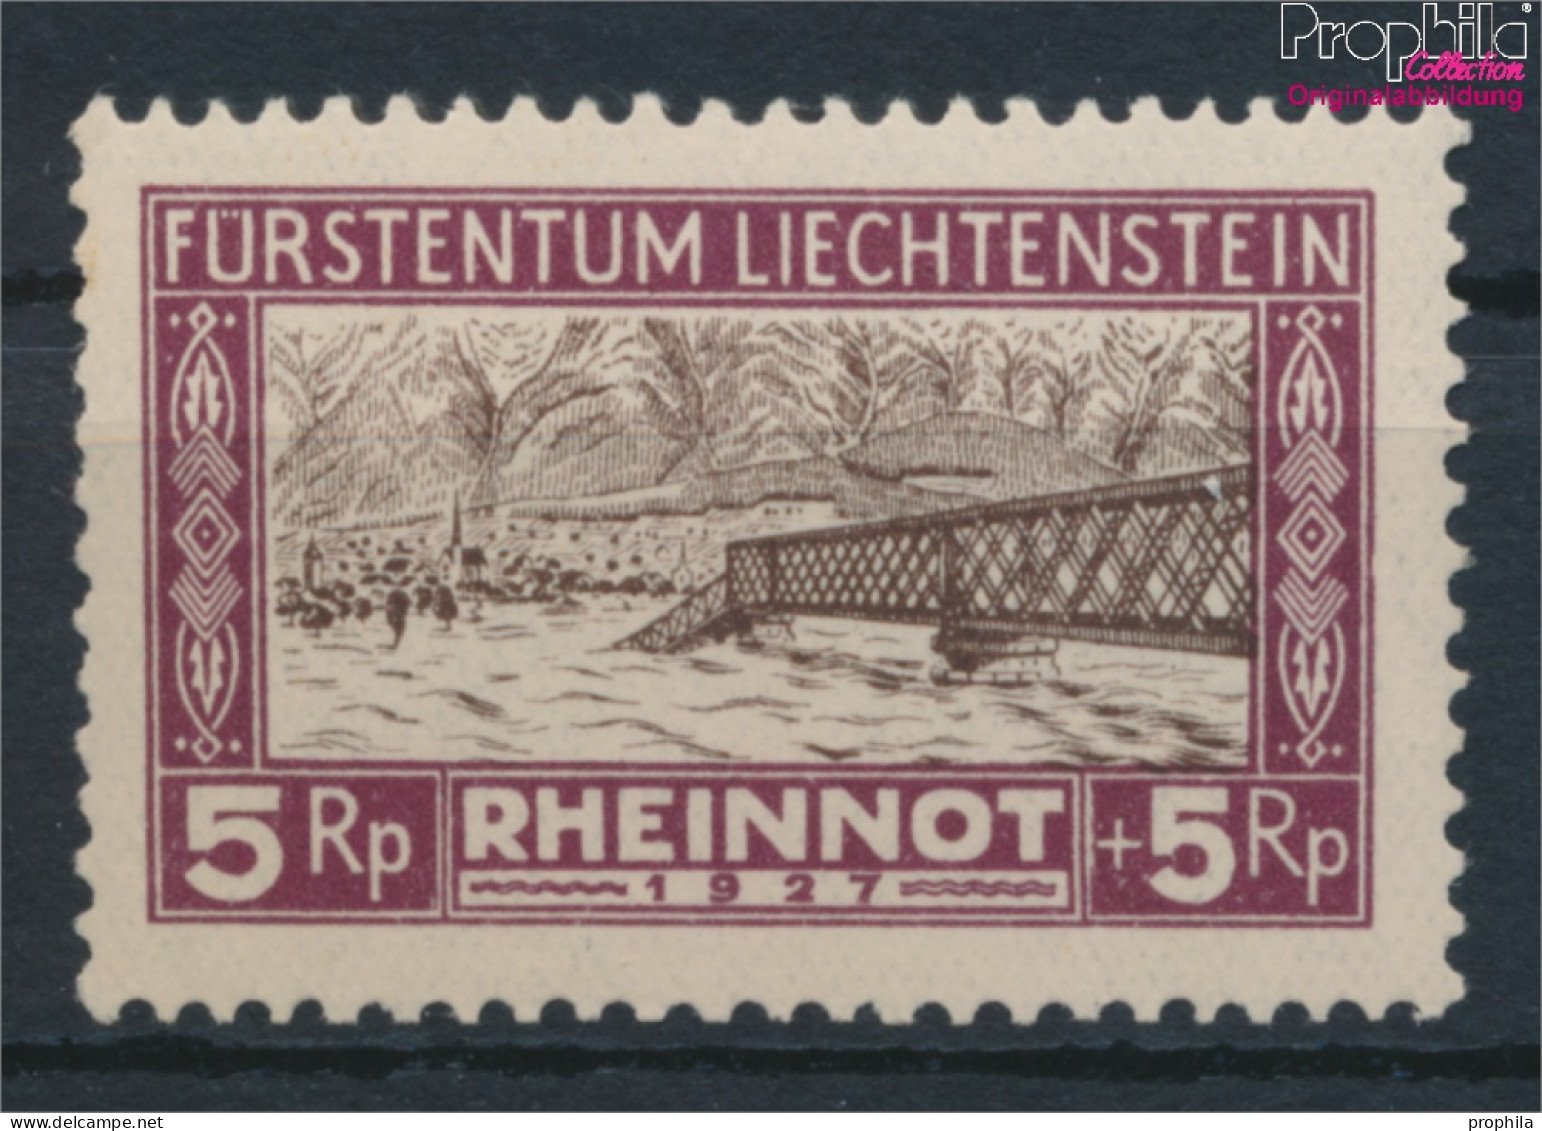 Liechtenstein 78 Postfrisch 1928 Hochwassergeschädigte (10377390 - Unused Stamps